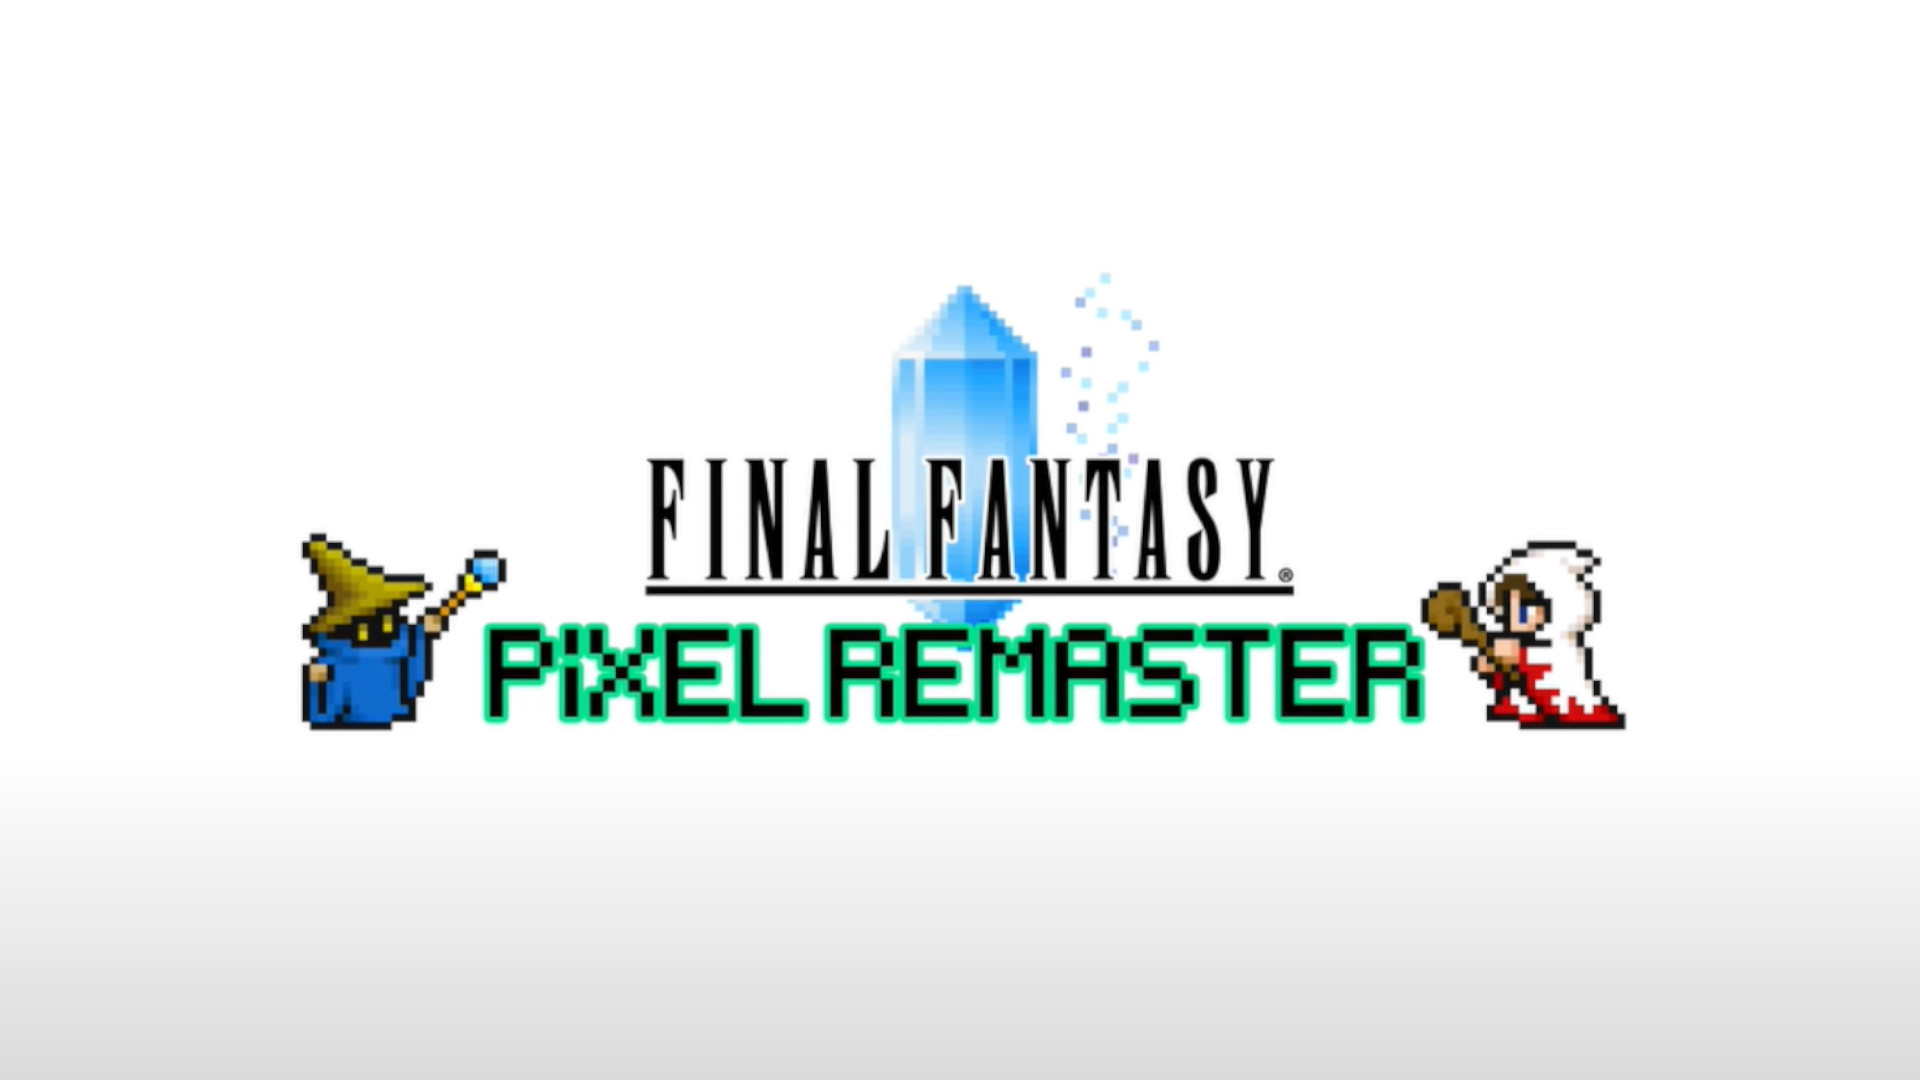 Hoʻomaka nā pāʻani Final Fantasy Pixel Remaster e hoʻokuʻu i ka mahina aʻe